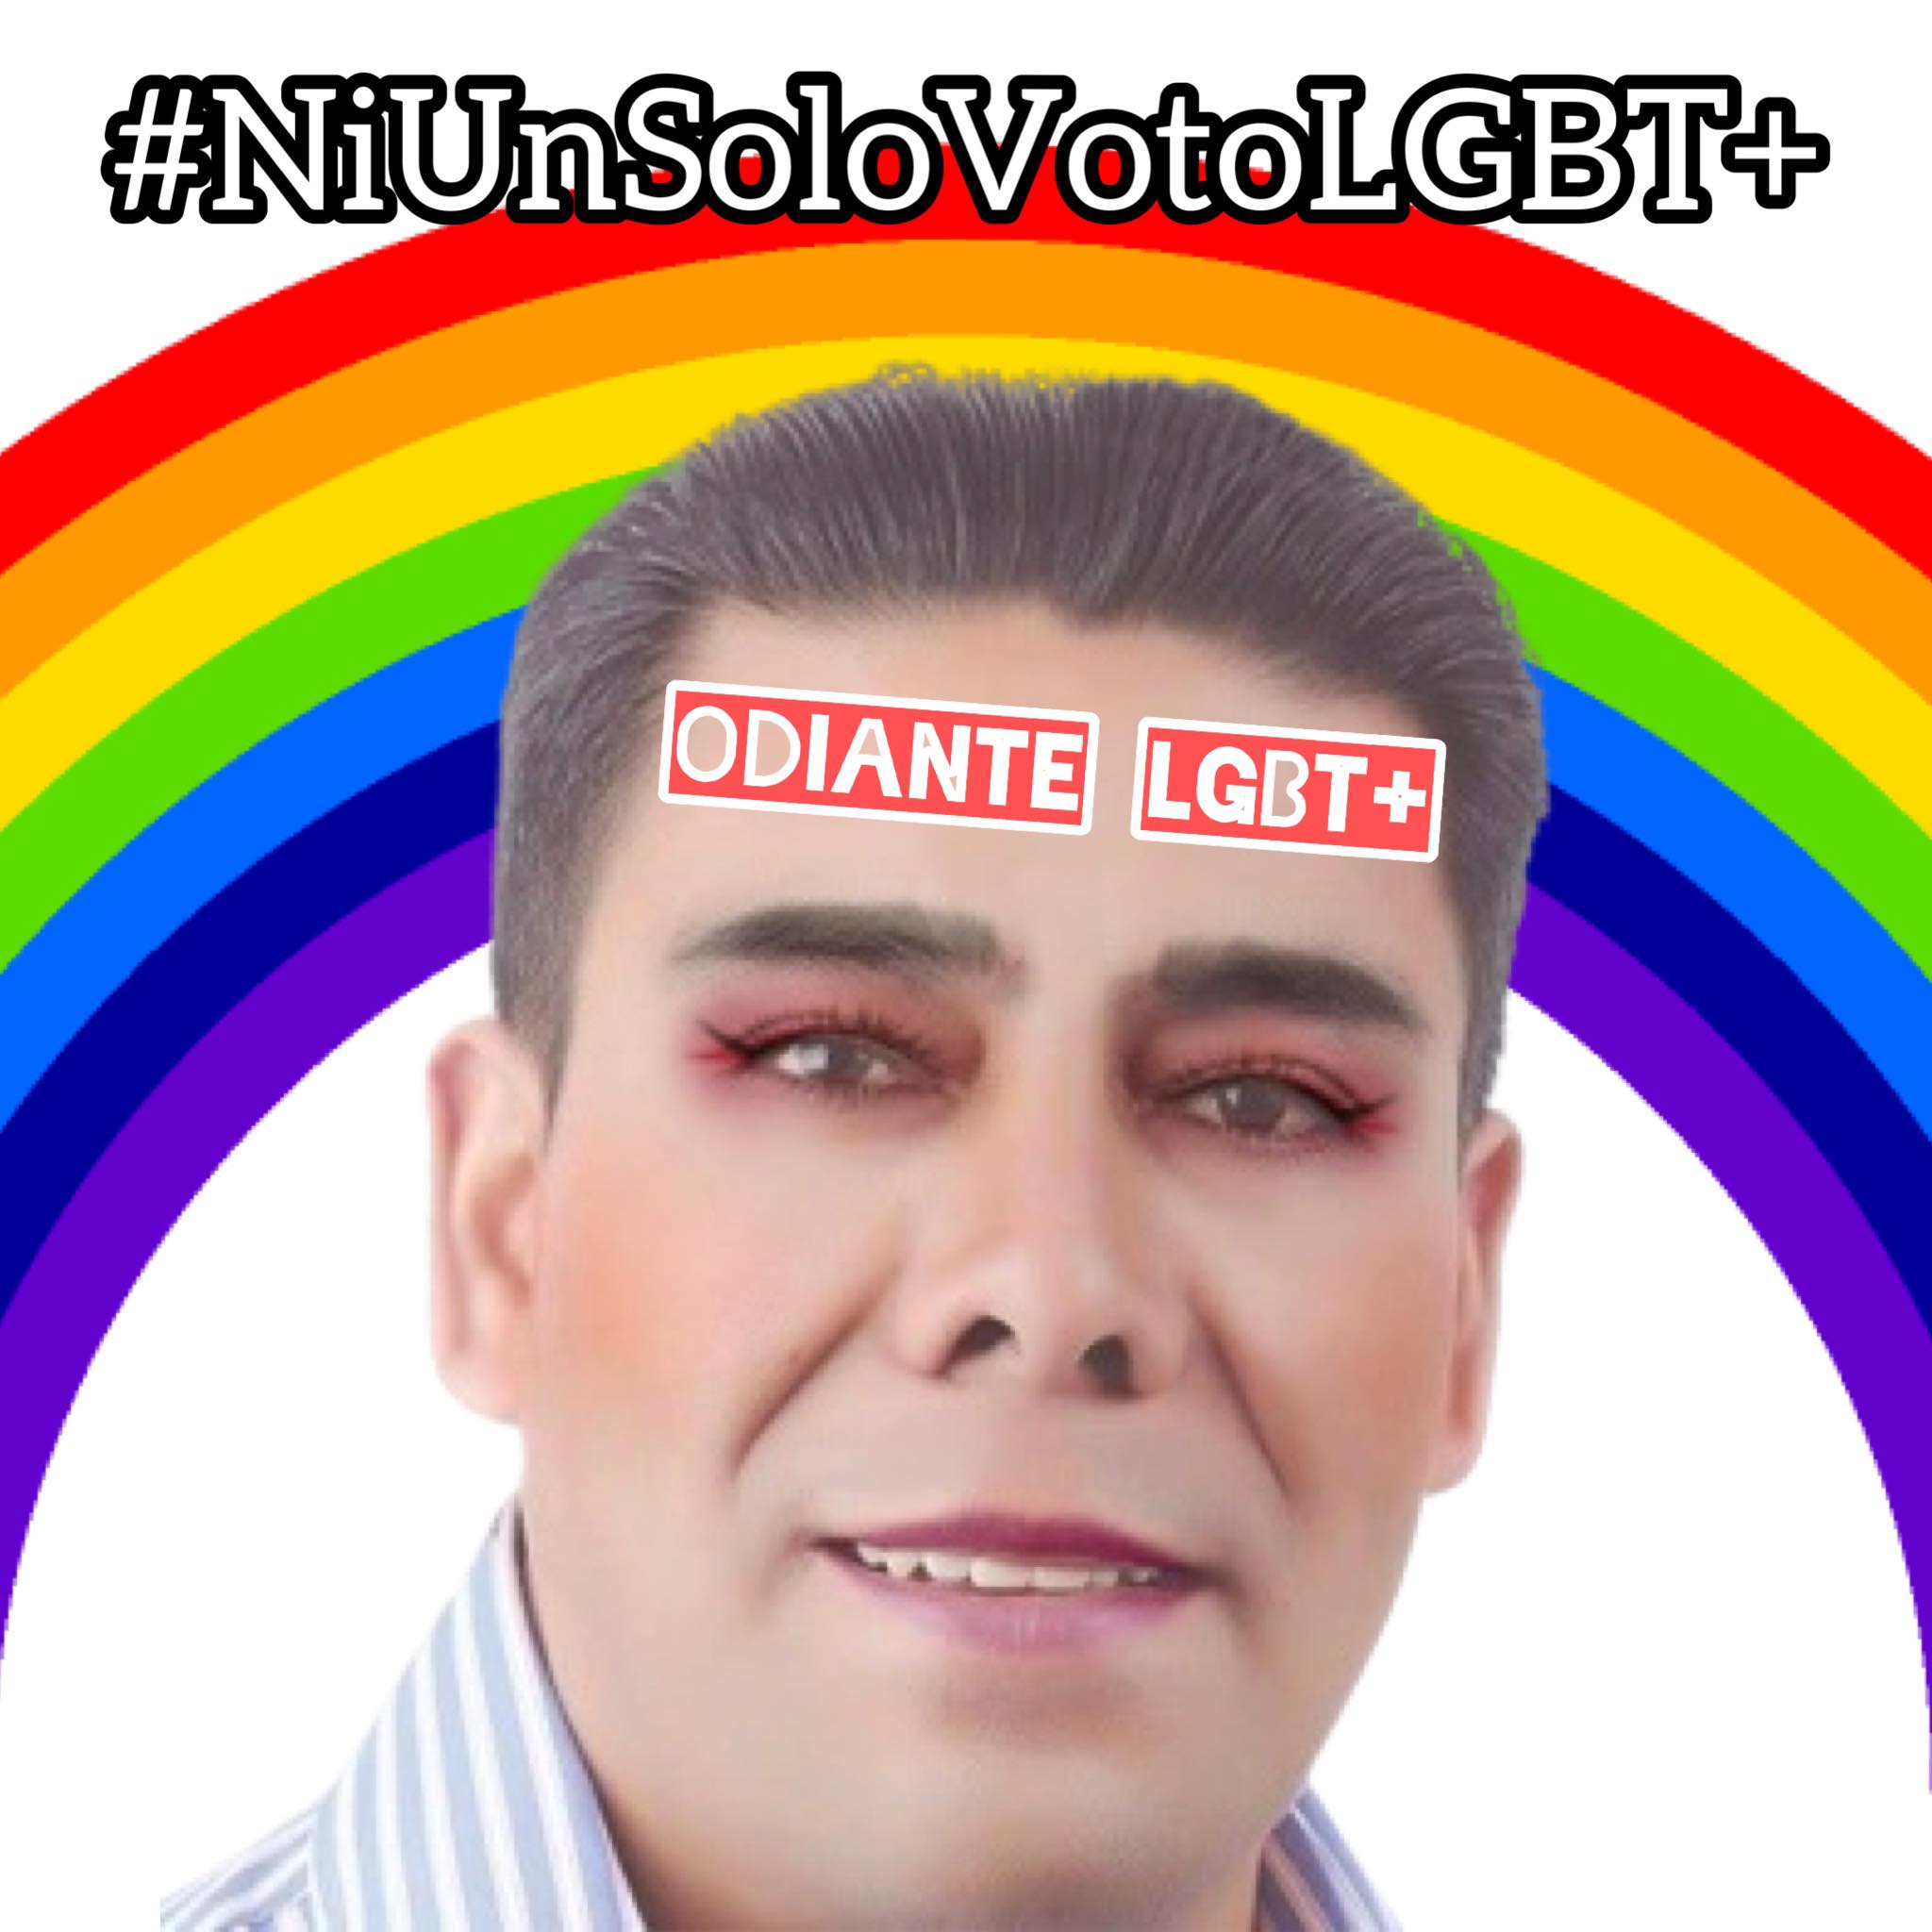 Un candidato a la alcaldía de Pujulí en Ecuador llama plaga de demonios a las personas LGTB+